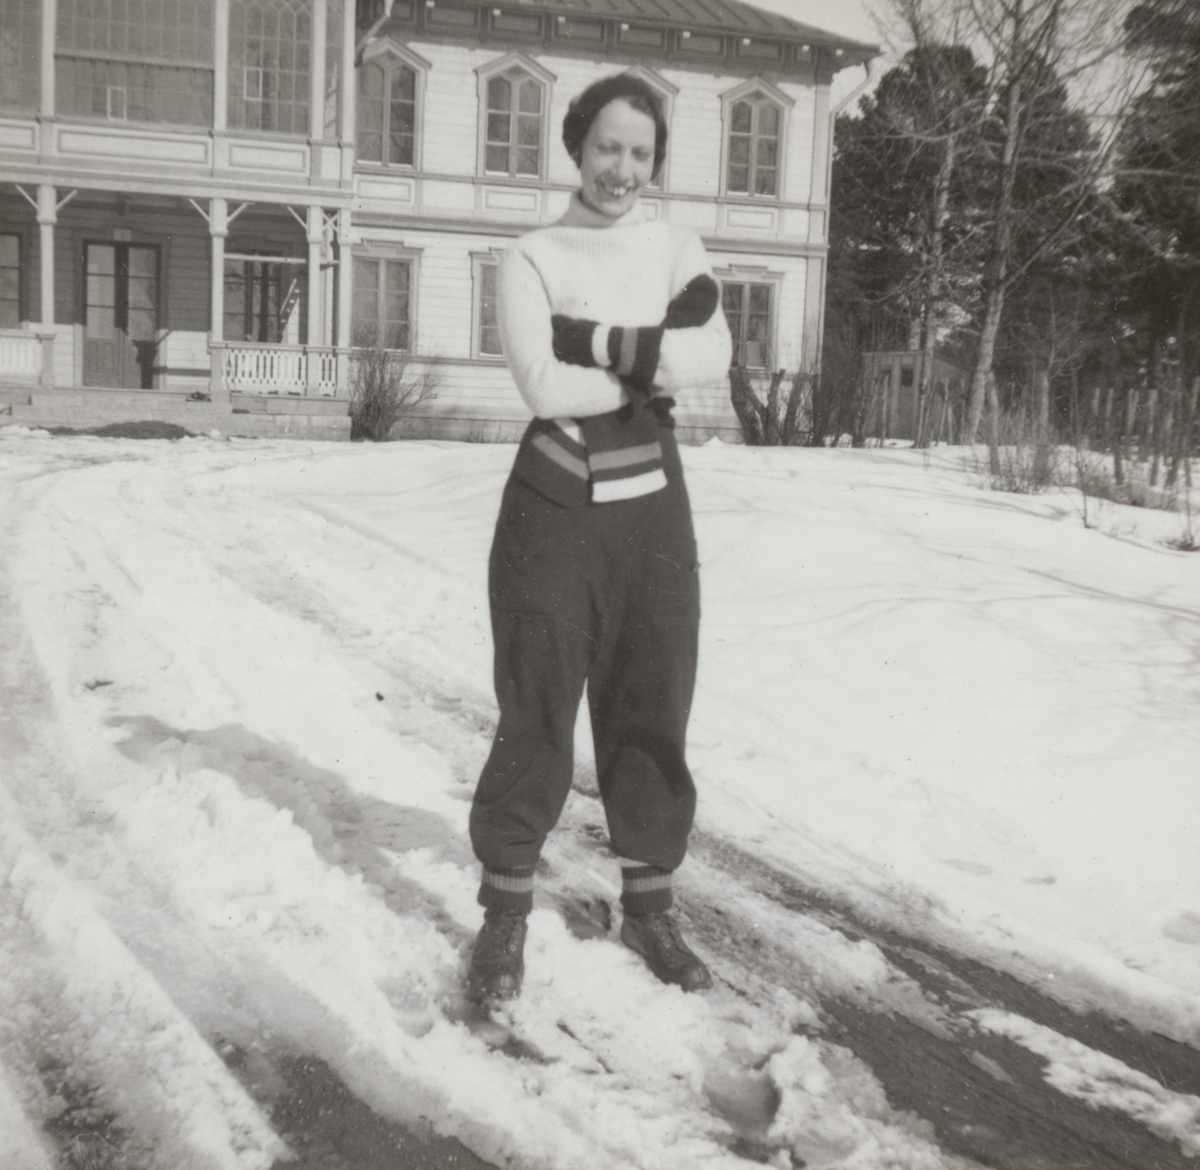 Porträttfoto av Anna Linderstam i skidklädsel utanför byggnad, vintertid, cirka 1925. Helbild.

Text vid foto: "'Annika gillar 'Östran'"